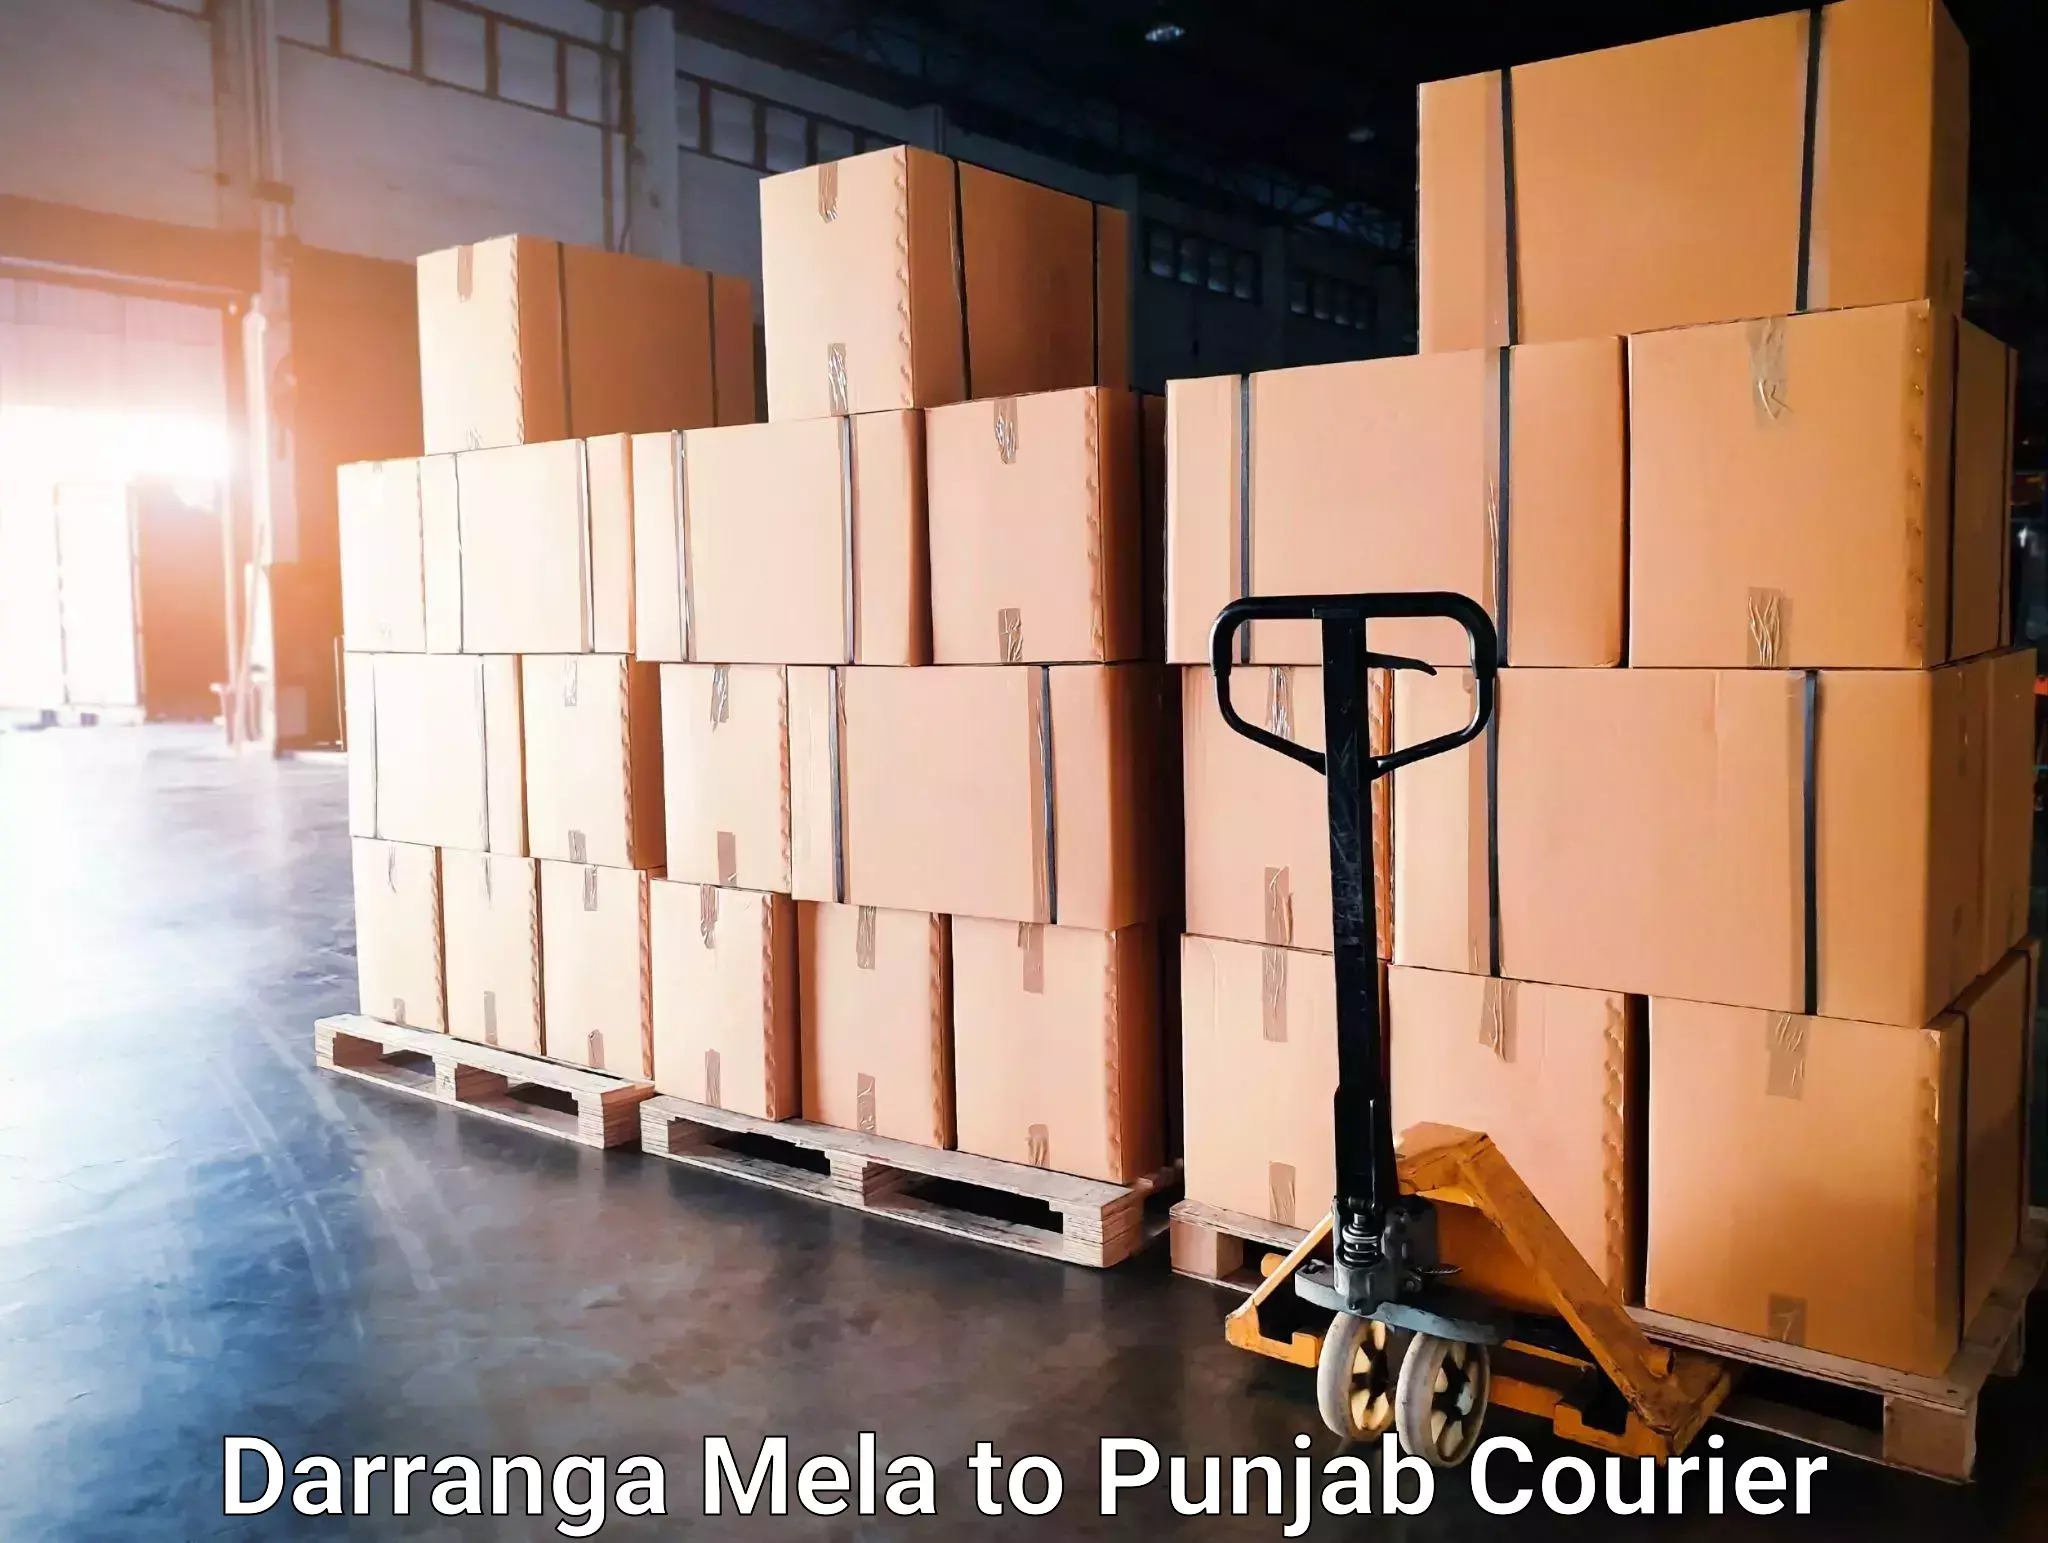 Business delivery service Darranga Mela to Sangrur